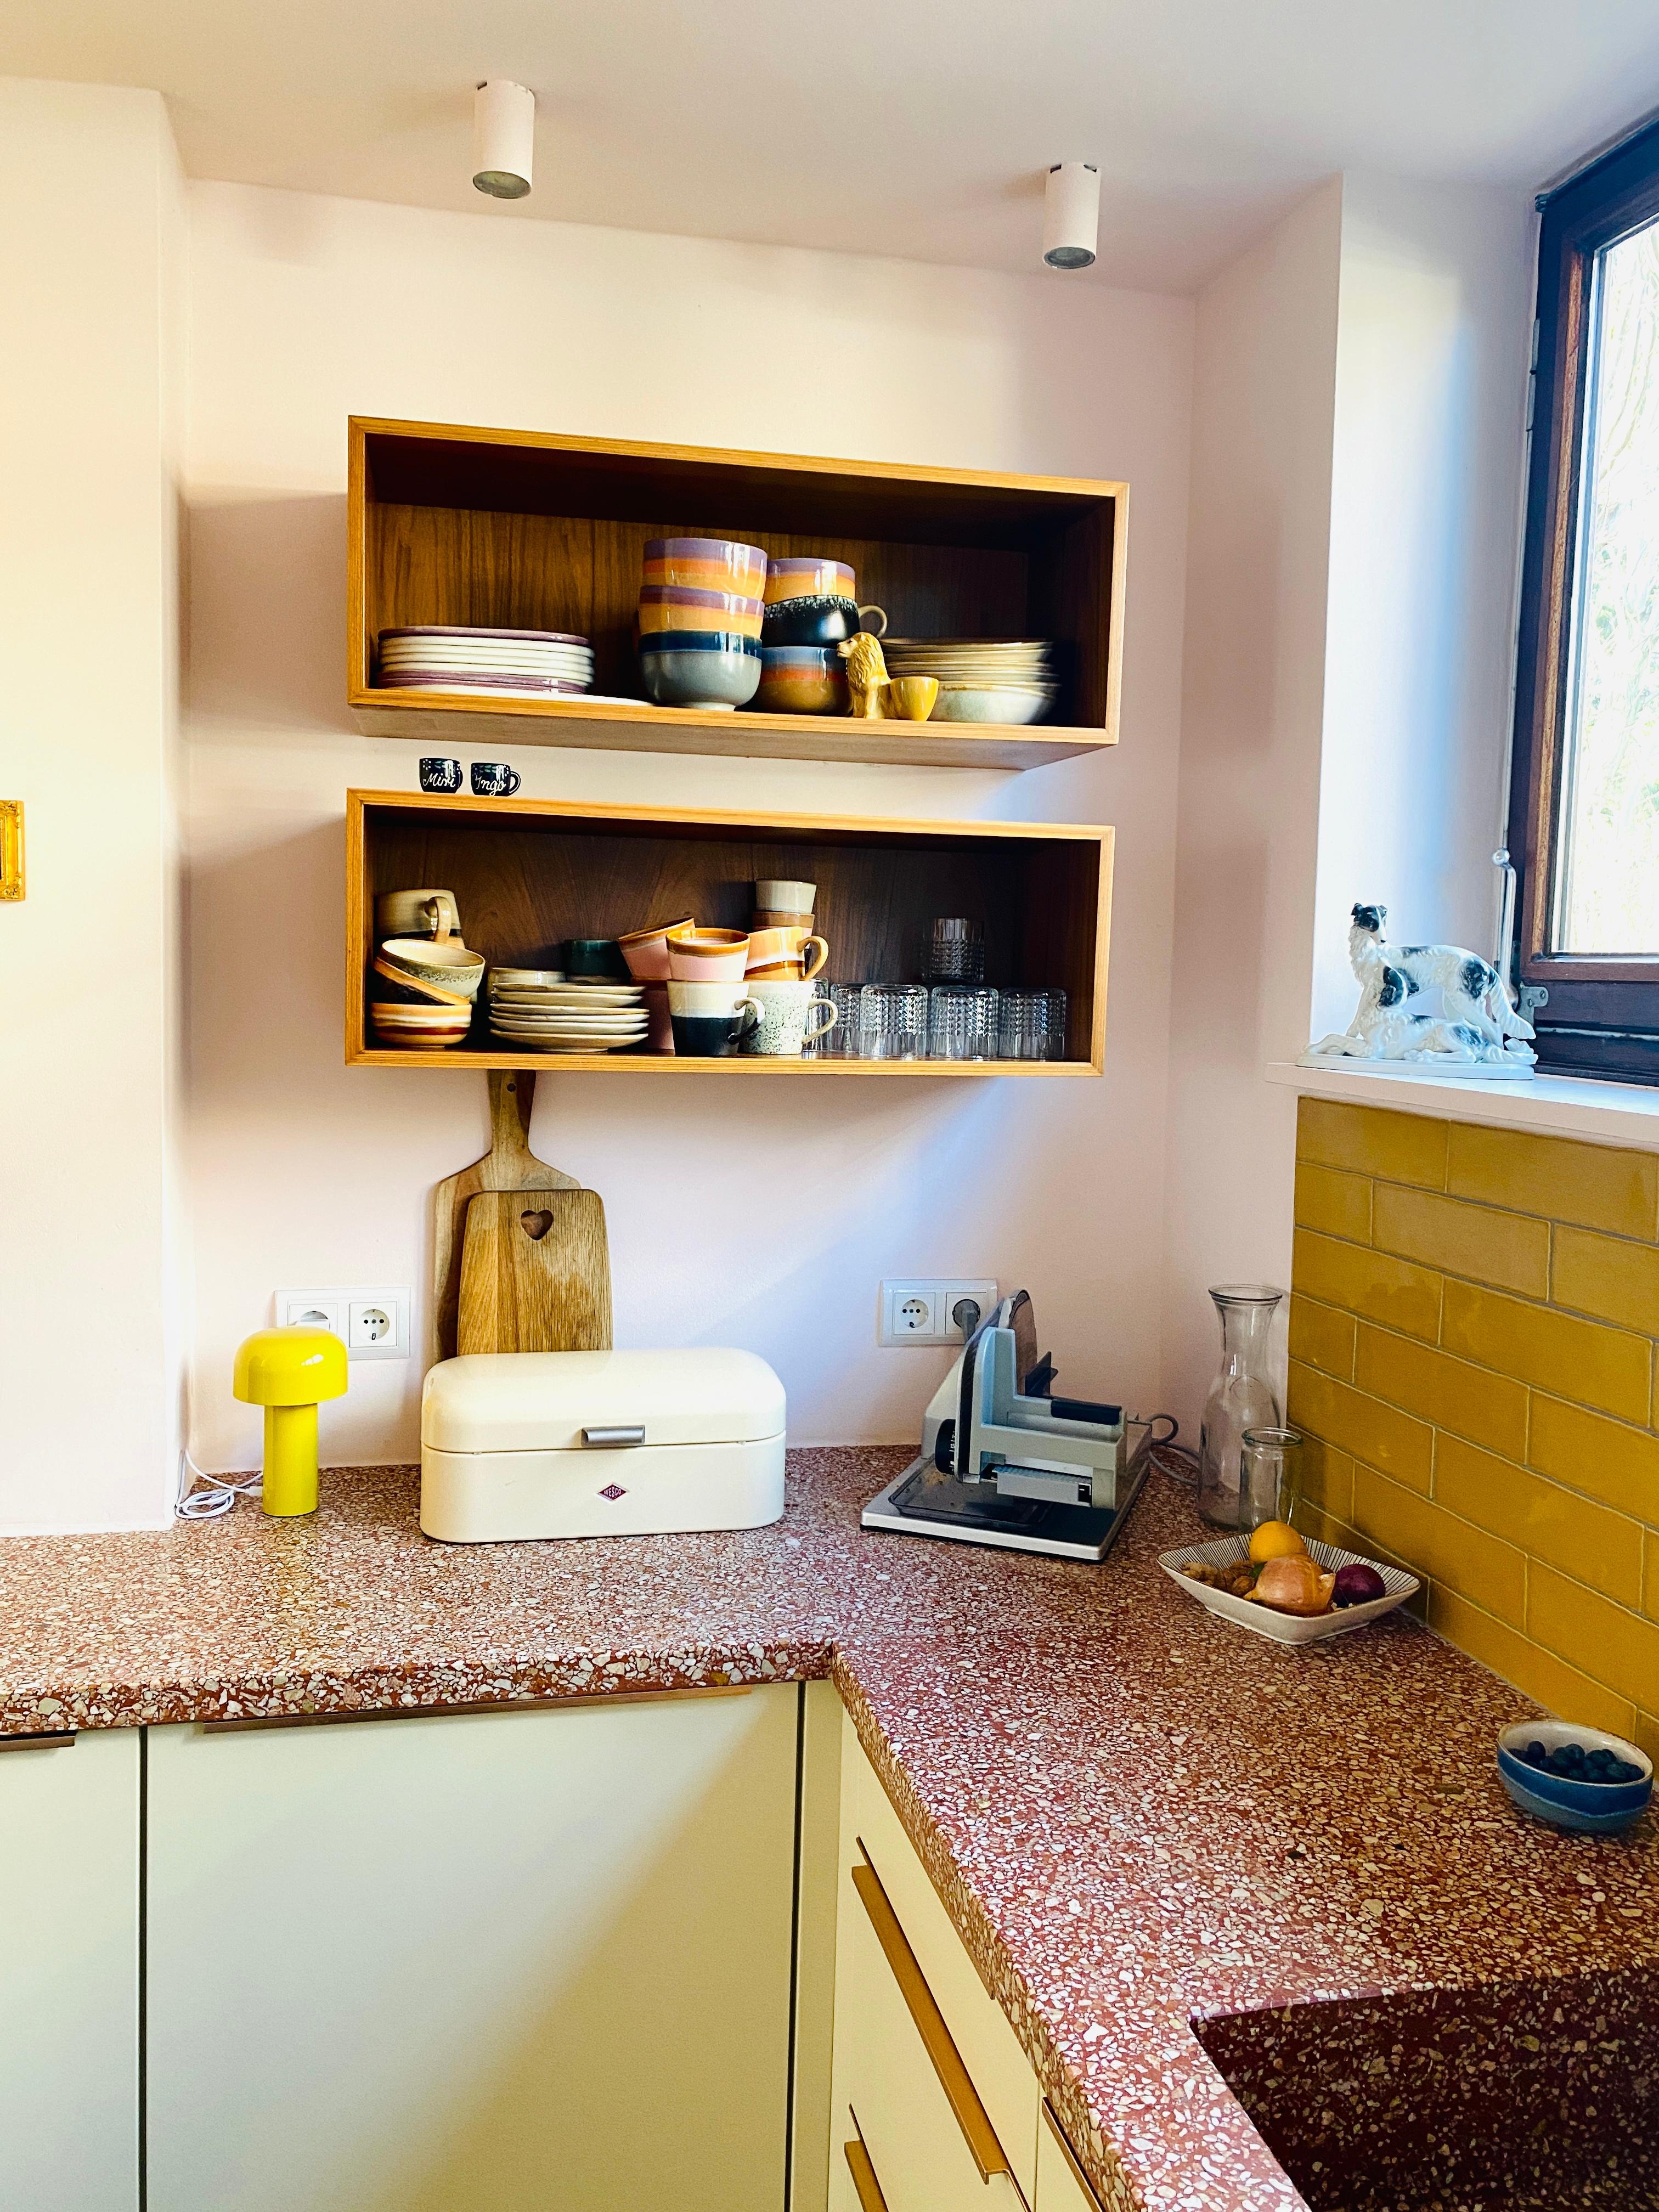 Ich liebe die offenen vintage Holzregale in der Küche #ebay 
#terrazzo #rosa #küche